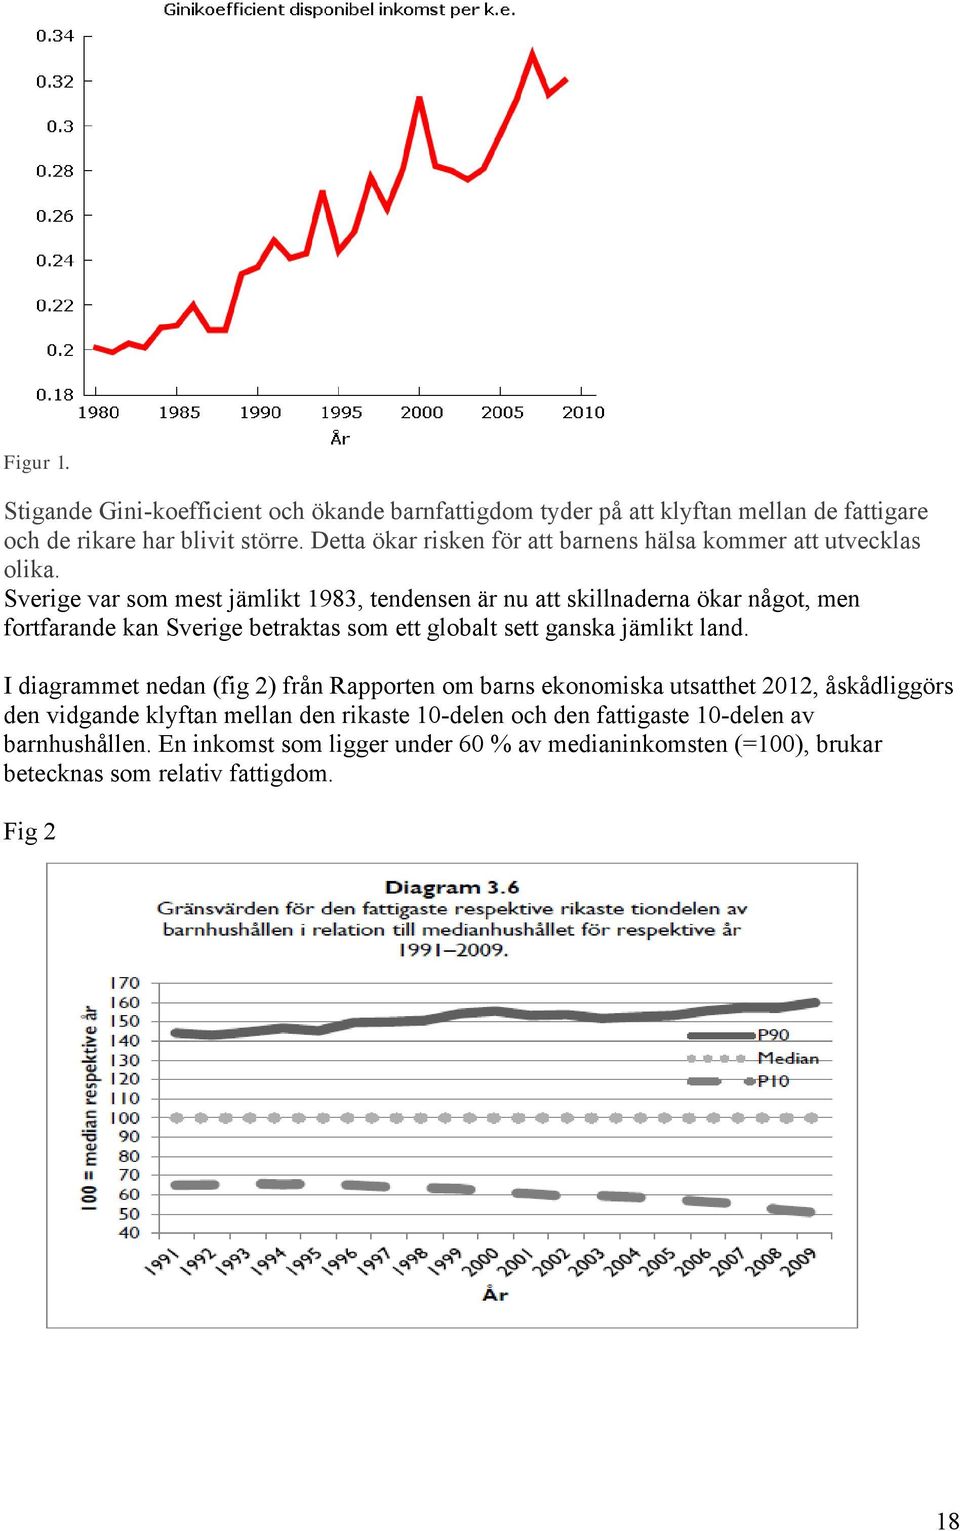 Sverige var som mest jämlikt 1983, tendensen är nu att skillnaderna ökar något, men fortfarande kan Sverige betraktas som ett globalt sett ganska jämlikt land.